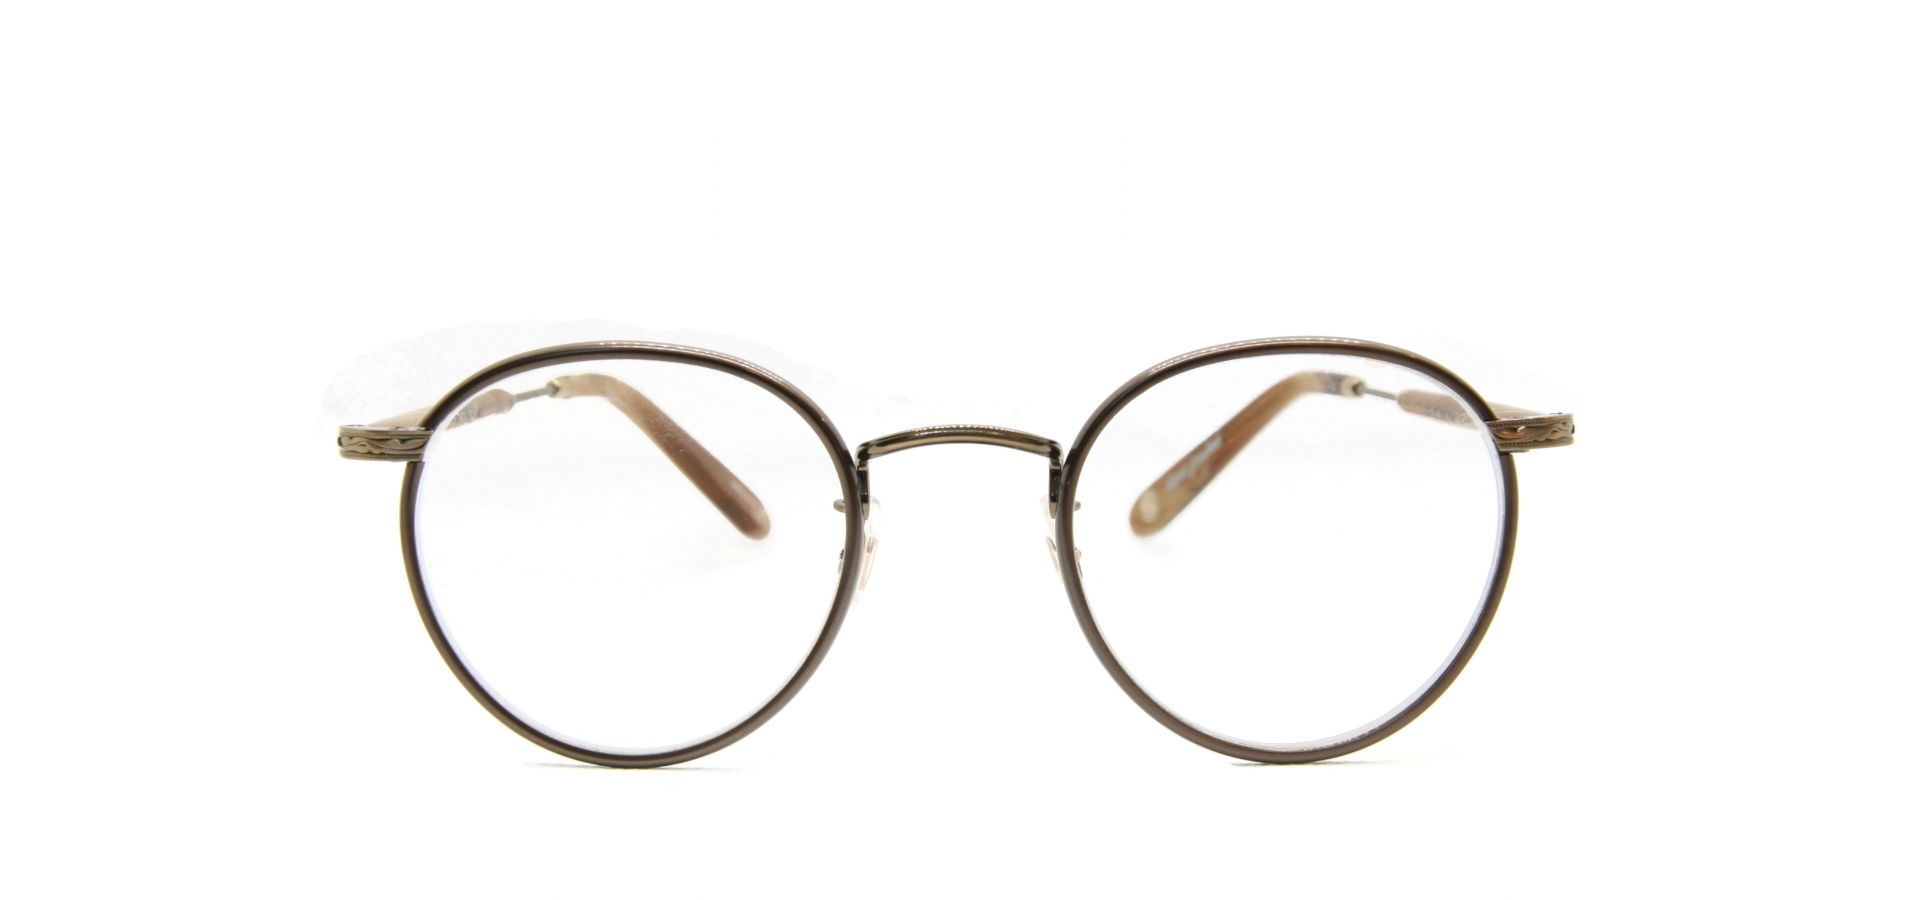 Korekcijska očala Garrett Leight WILSON 46 BROWN PEARL BRUSHED GOLD: Velikost: 46/22, Spol: unisex, Material: acetat/titan